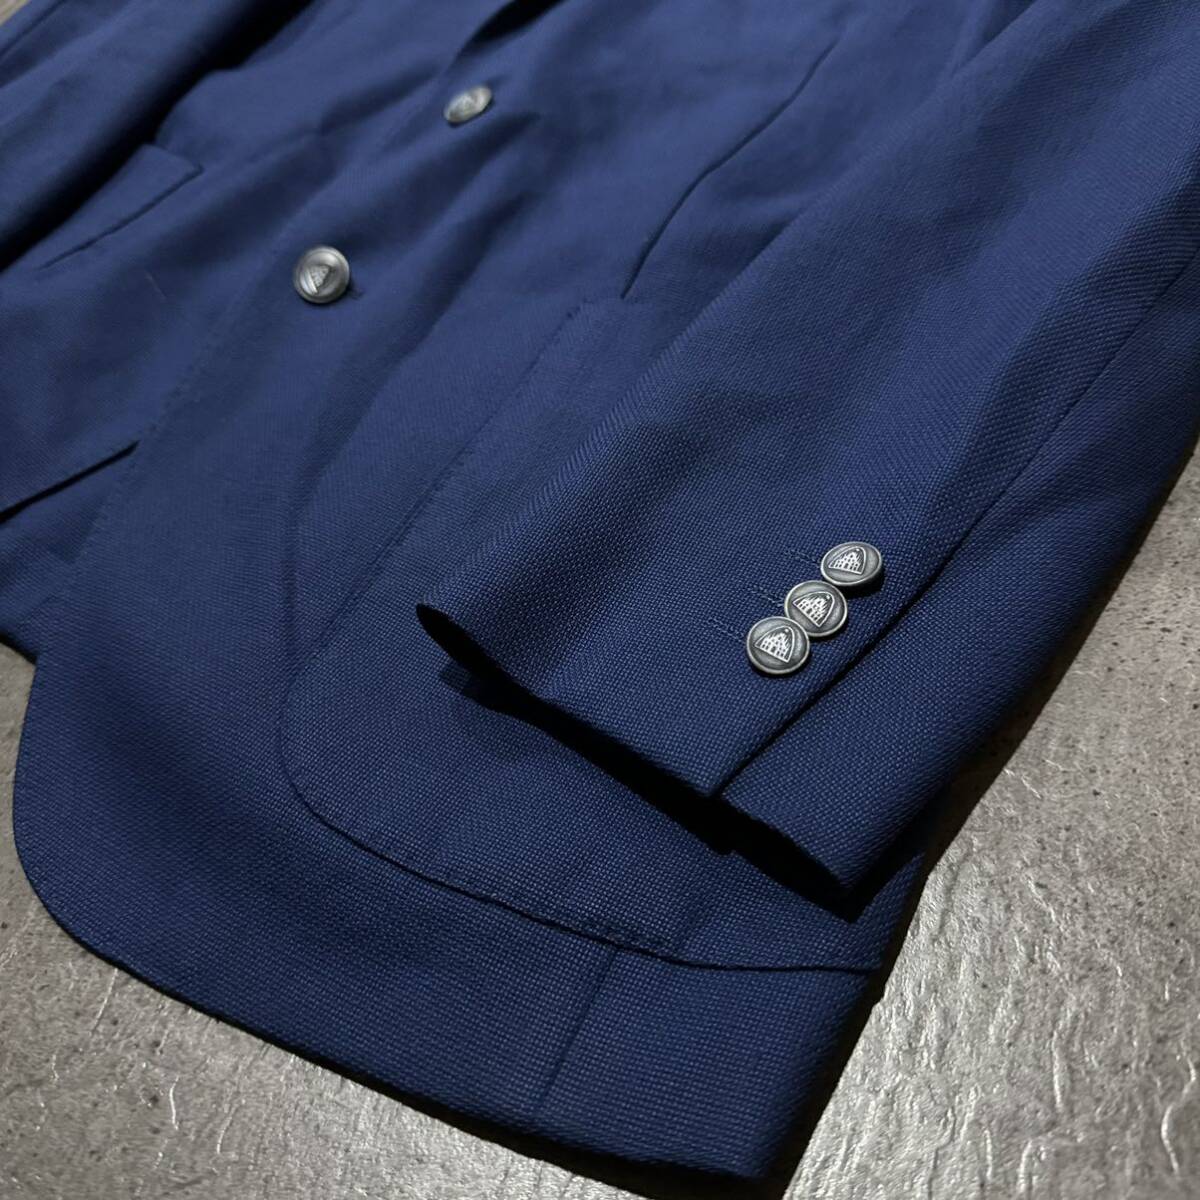 S ☆良品/ 至高の一品 'イタリア製' BOGLIOLI ボリオリ WOOL100%生地 テーラードジャケット 2ボタン 大きいサイズ:50 アウター 高級紳士服の画像5